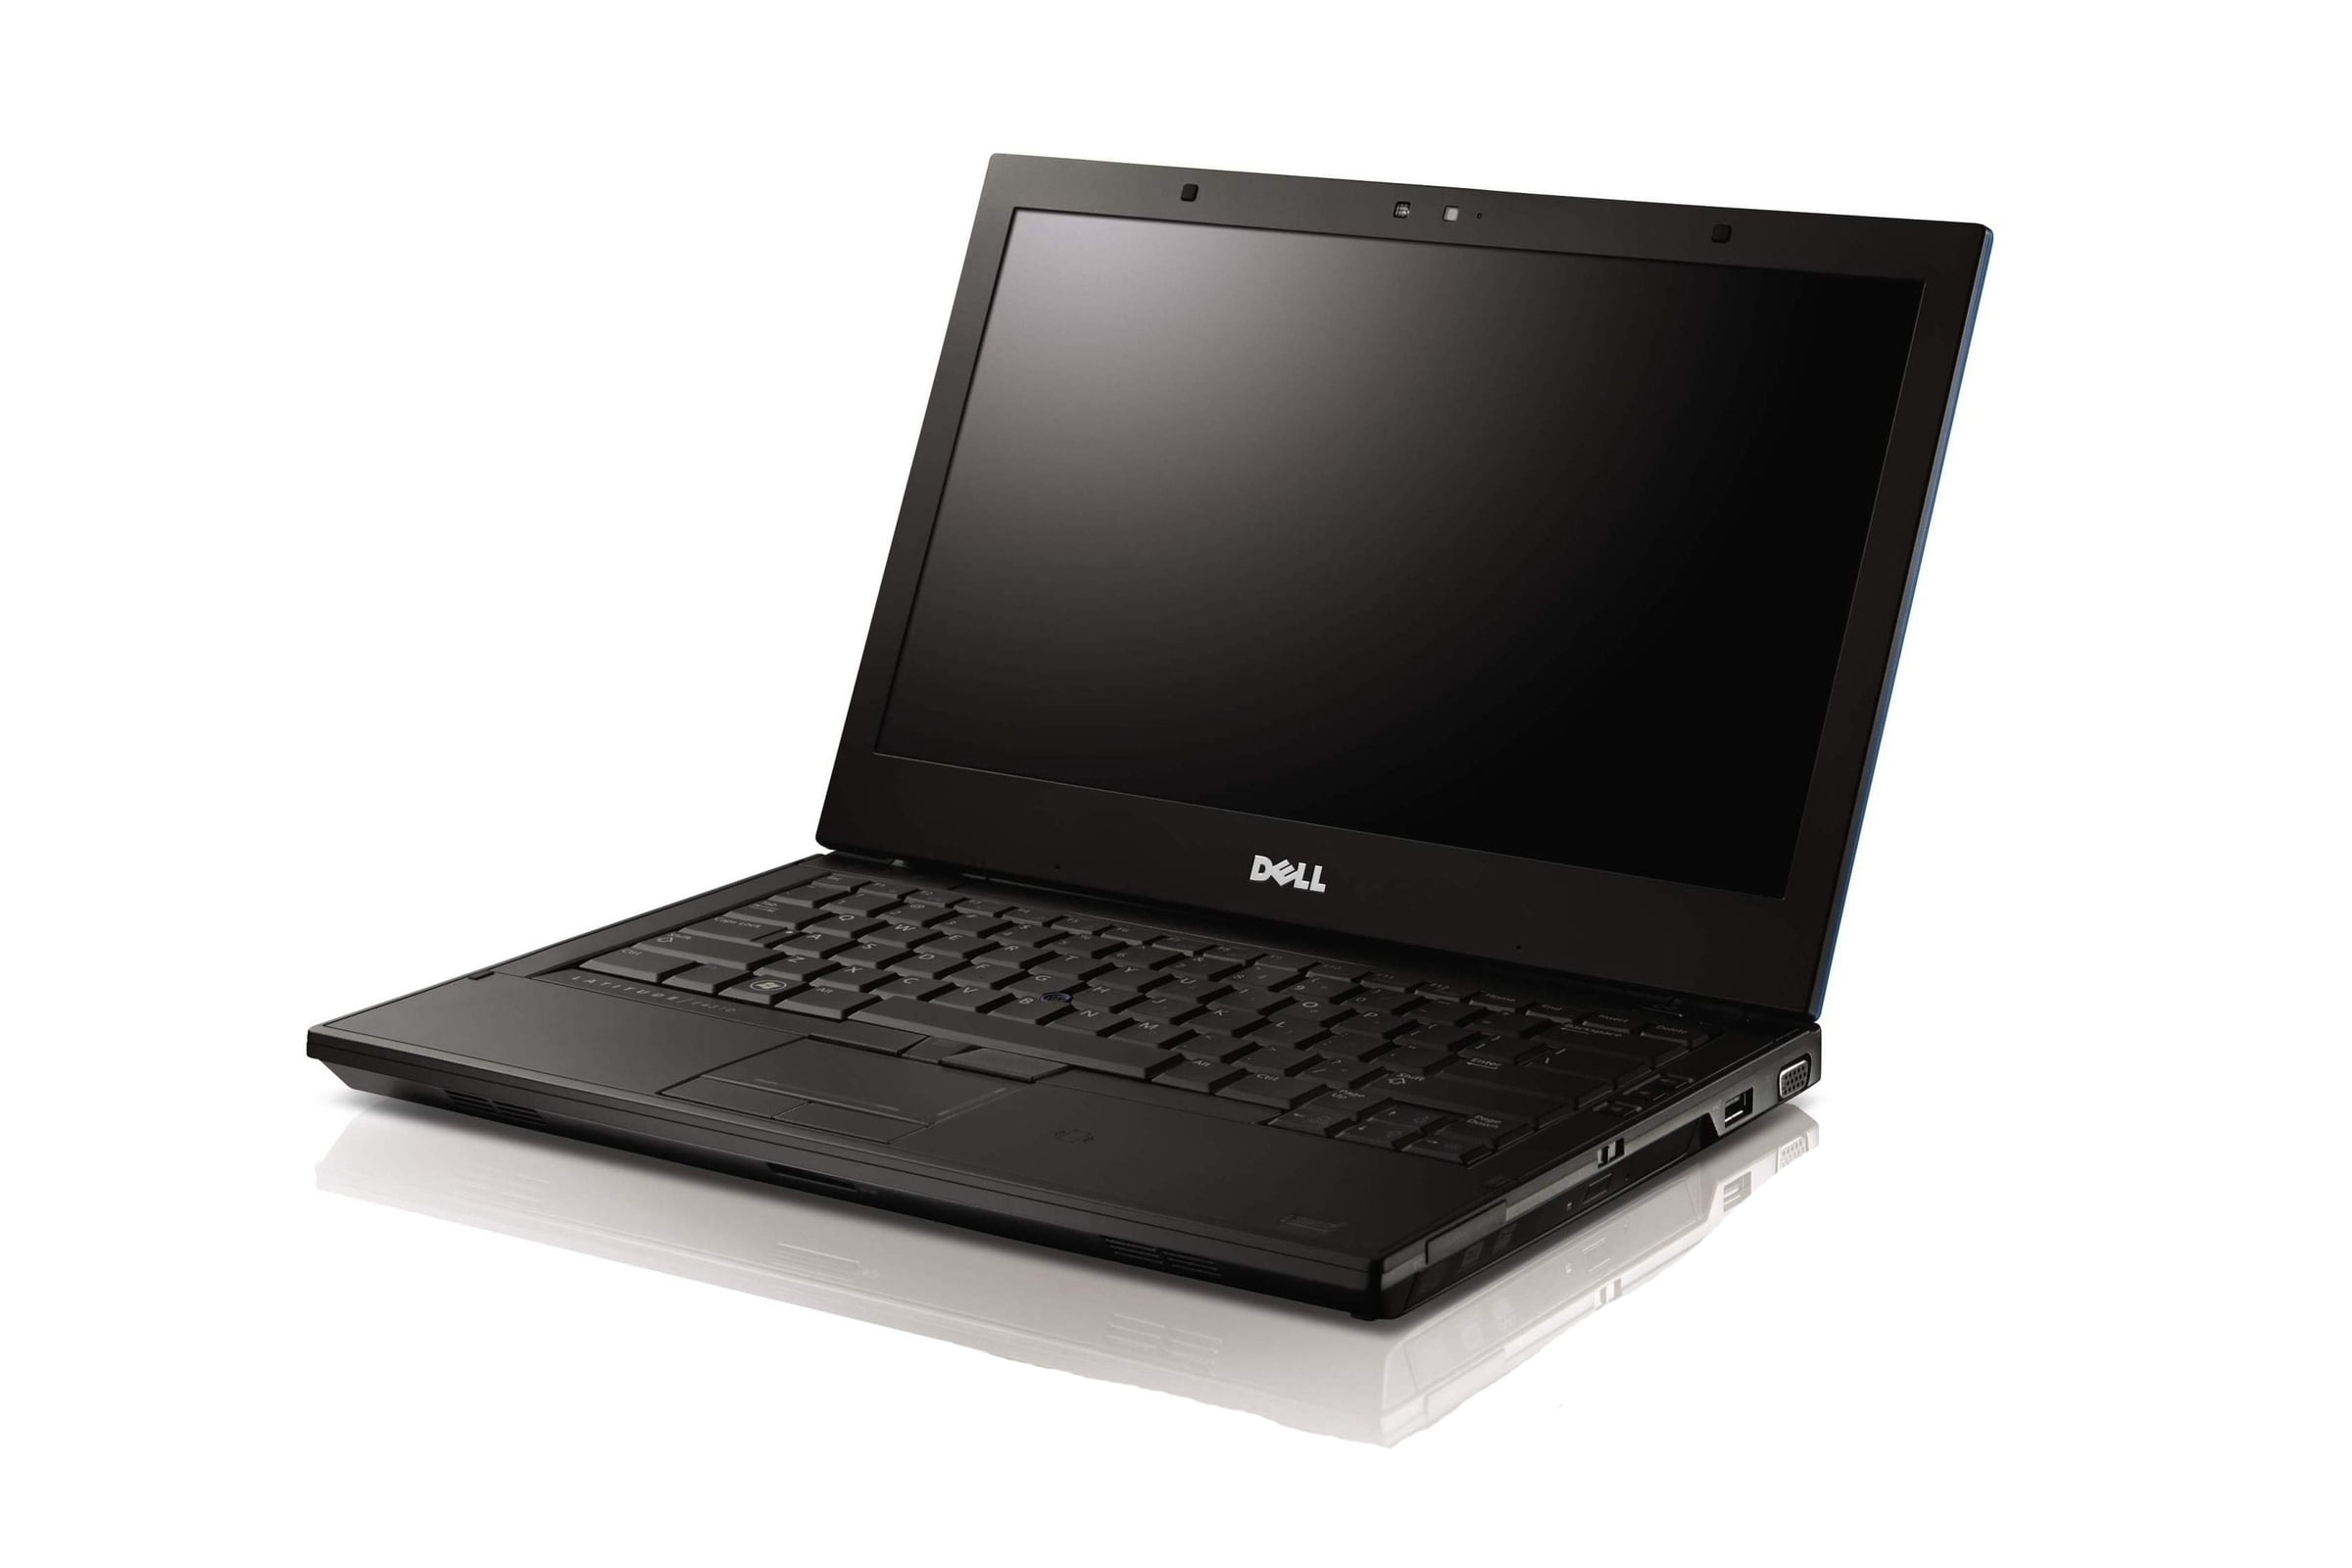 Dell Latitude E4310 13 3 Standard Refurbished Laptop Intel Core I5 5m 1st Gen 2 4 Ghz 4gb 250gb Hdd Dvd Rw Windows 10 Home 64 Bit Walmart Com Walmart Com